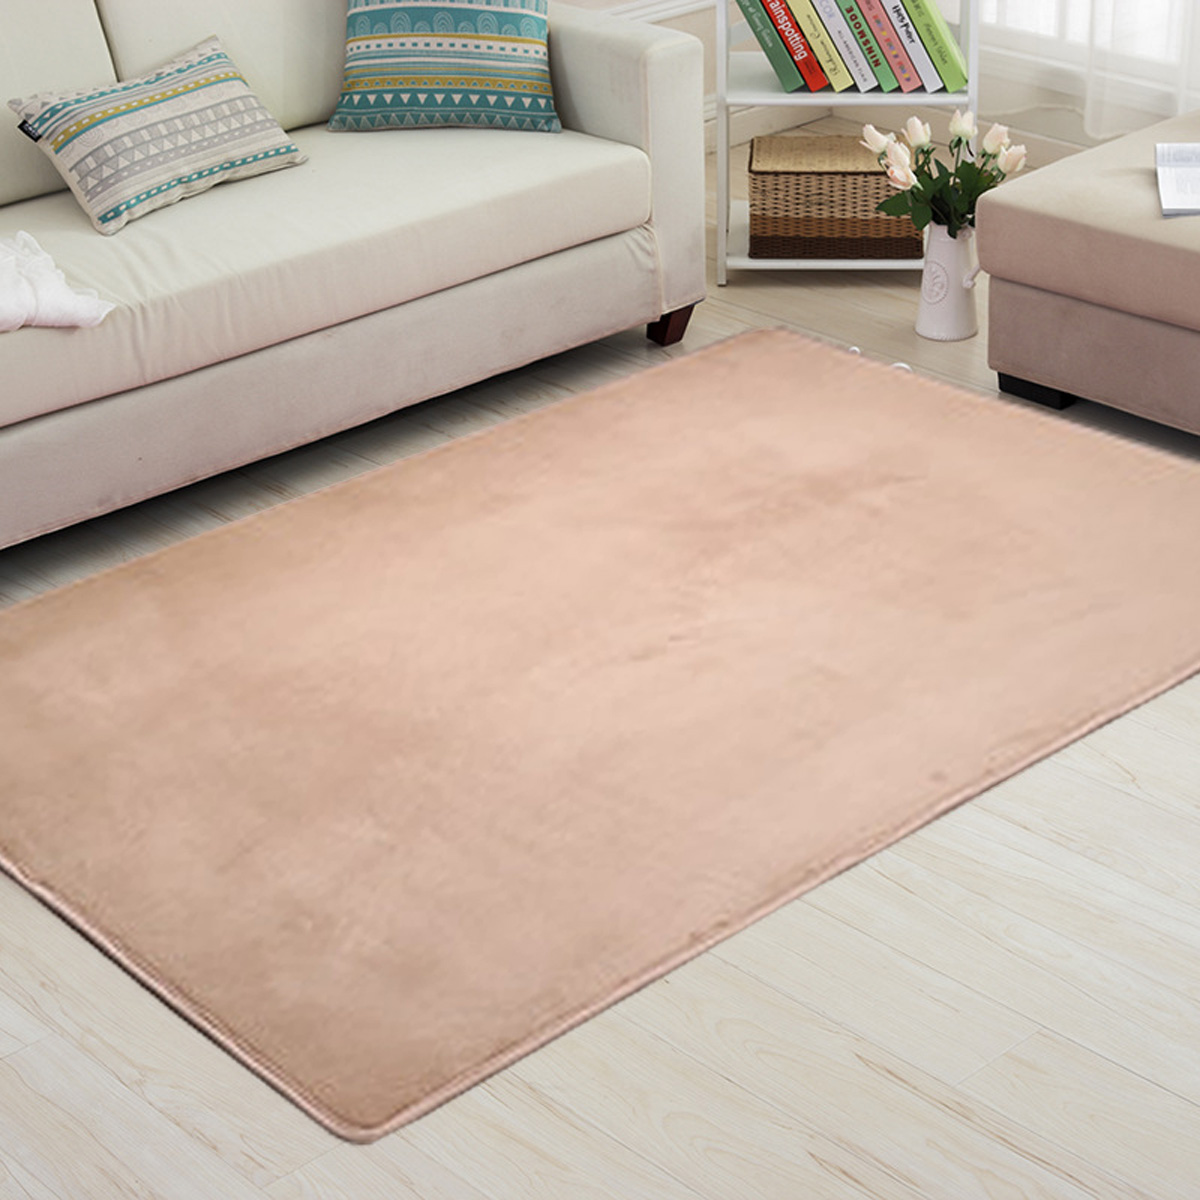 4-Sizes-Carpet-Modern-Living-Room-Area-Carpet-Bedroom-Bedside-Rug-Home-Decoration-1637671-4